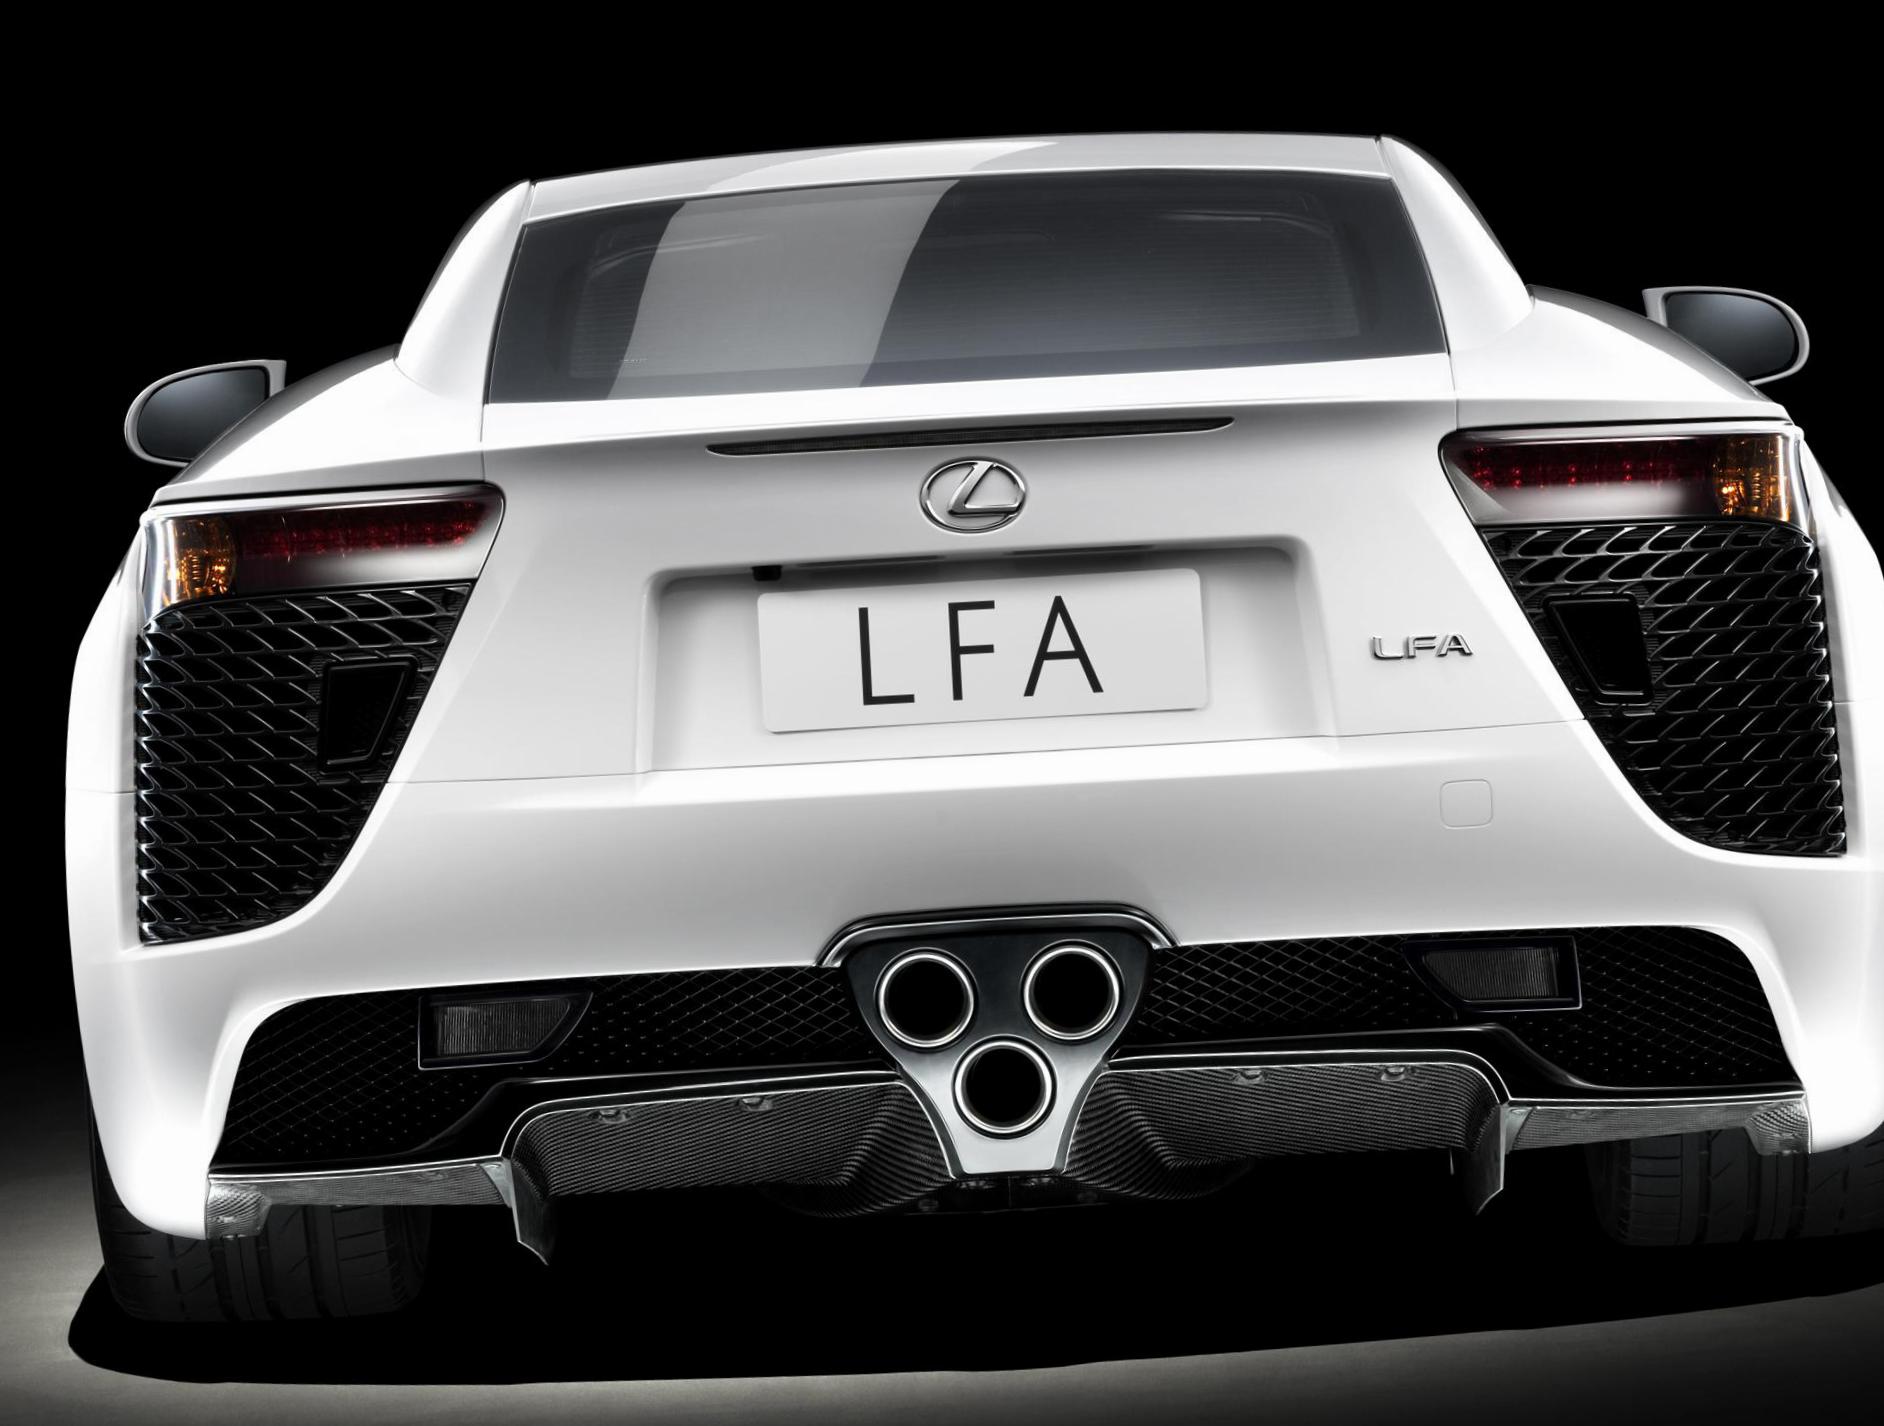 LFA Lexus new 2009